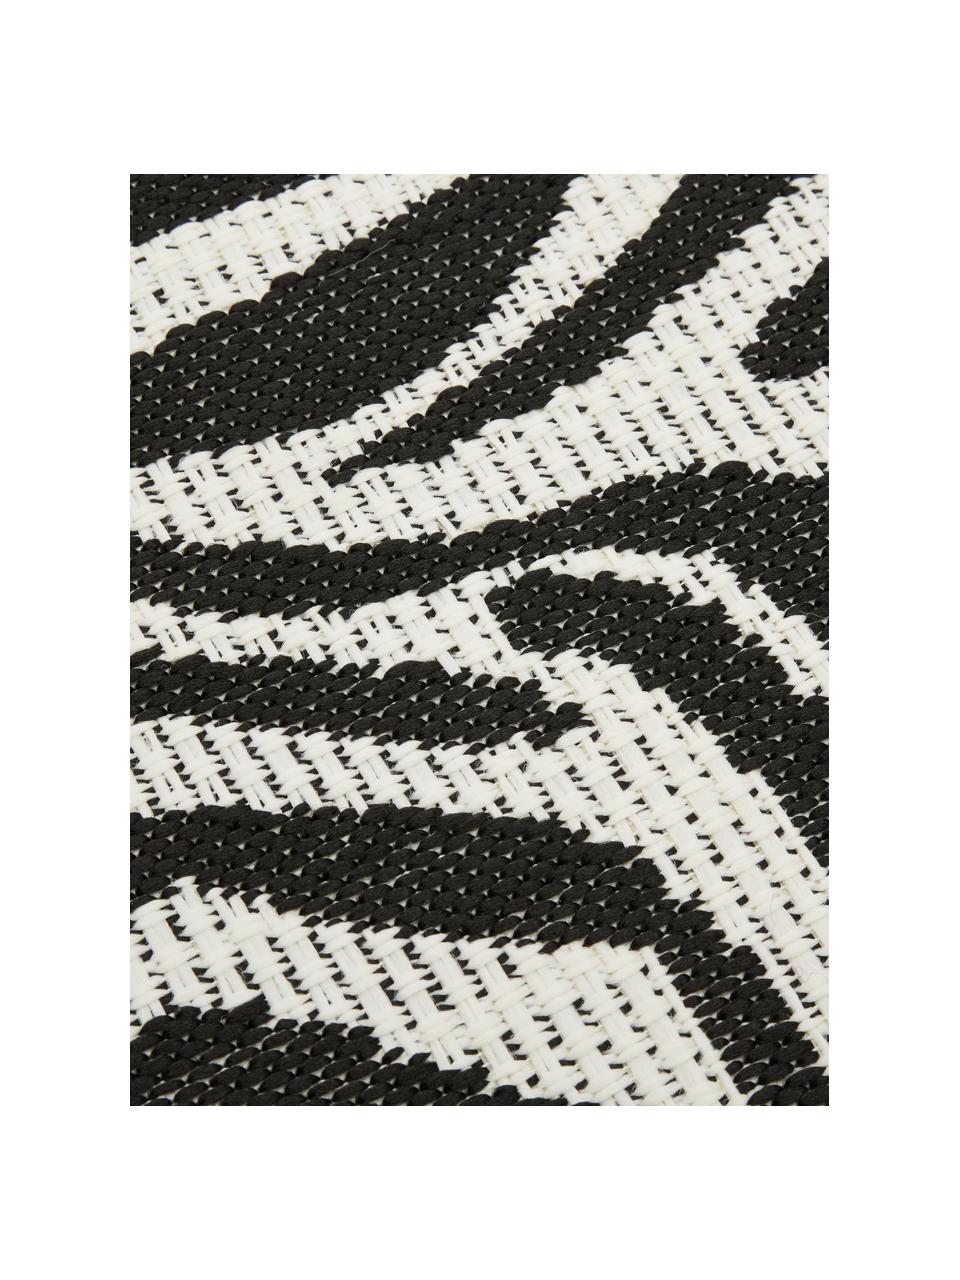 In- & Outdoor-Teppich Exotic mit Zebra Print, 86% Polypropylen, 14% Polyester, Cremeweiß, Schwarz, B 120 x L 170 cm (Größe S)